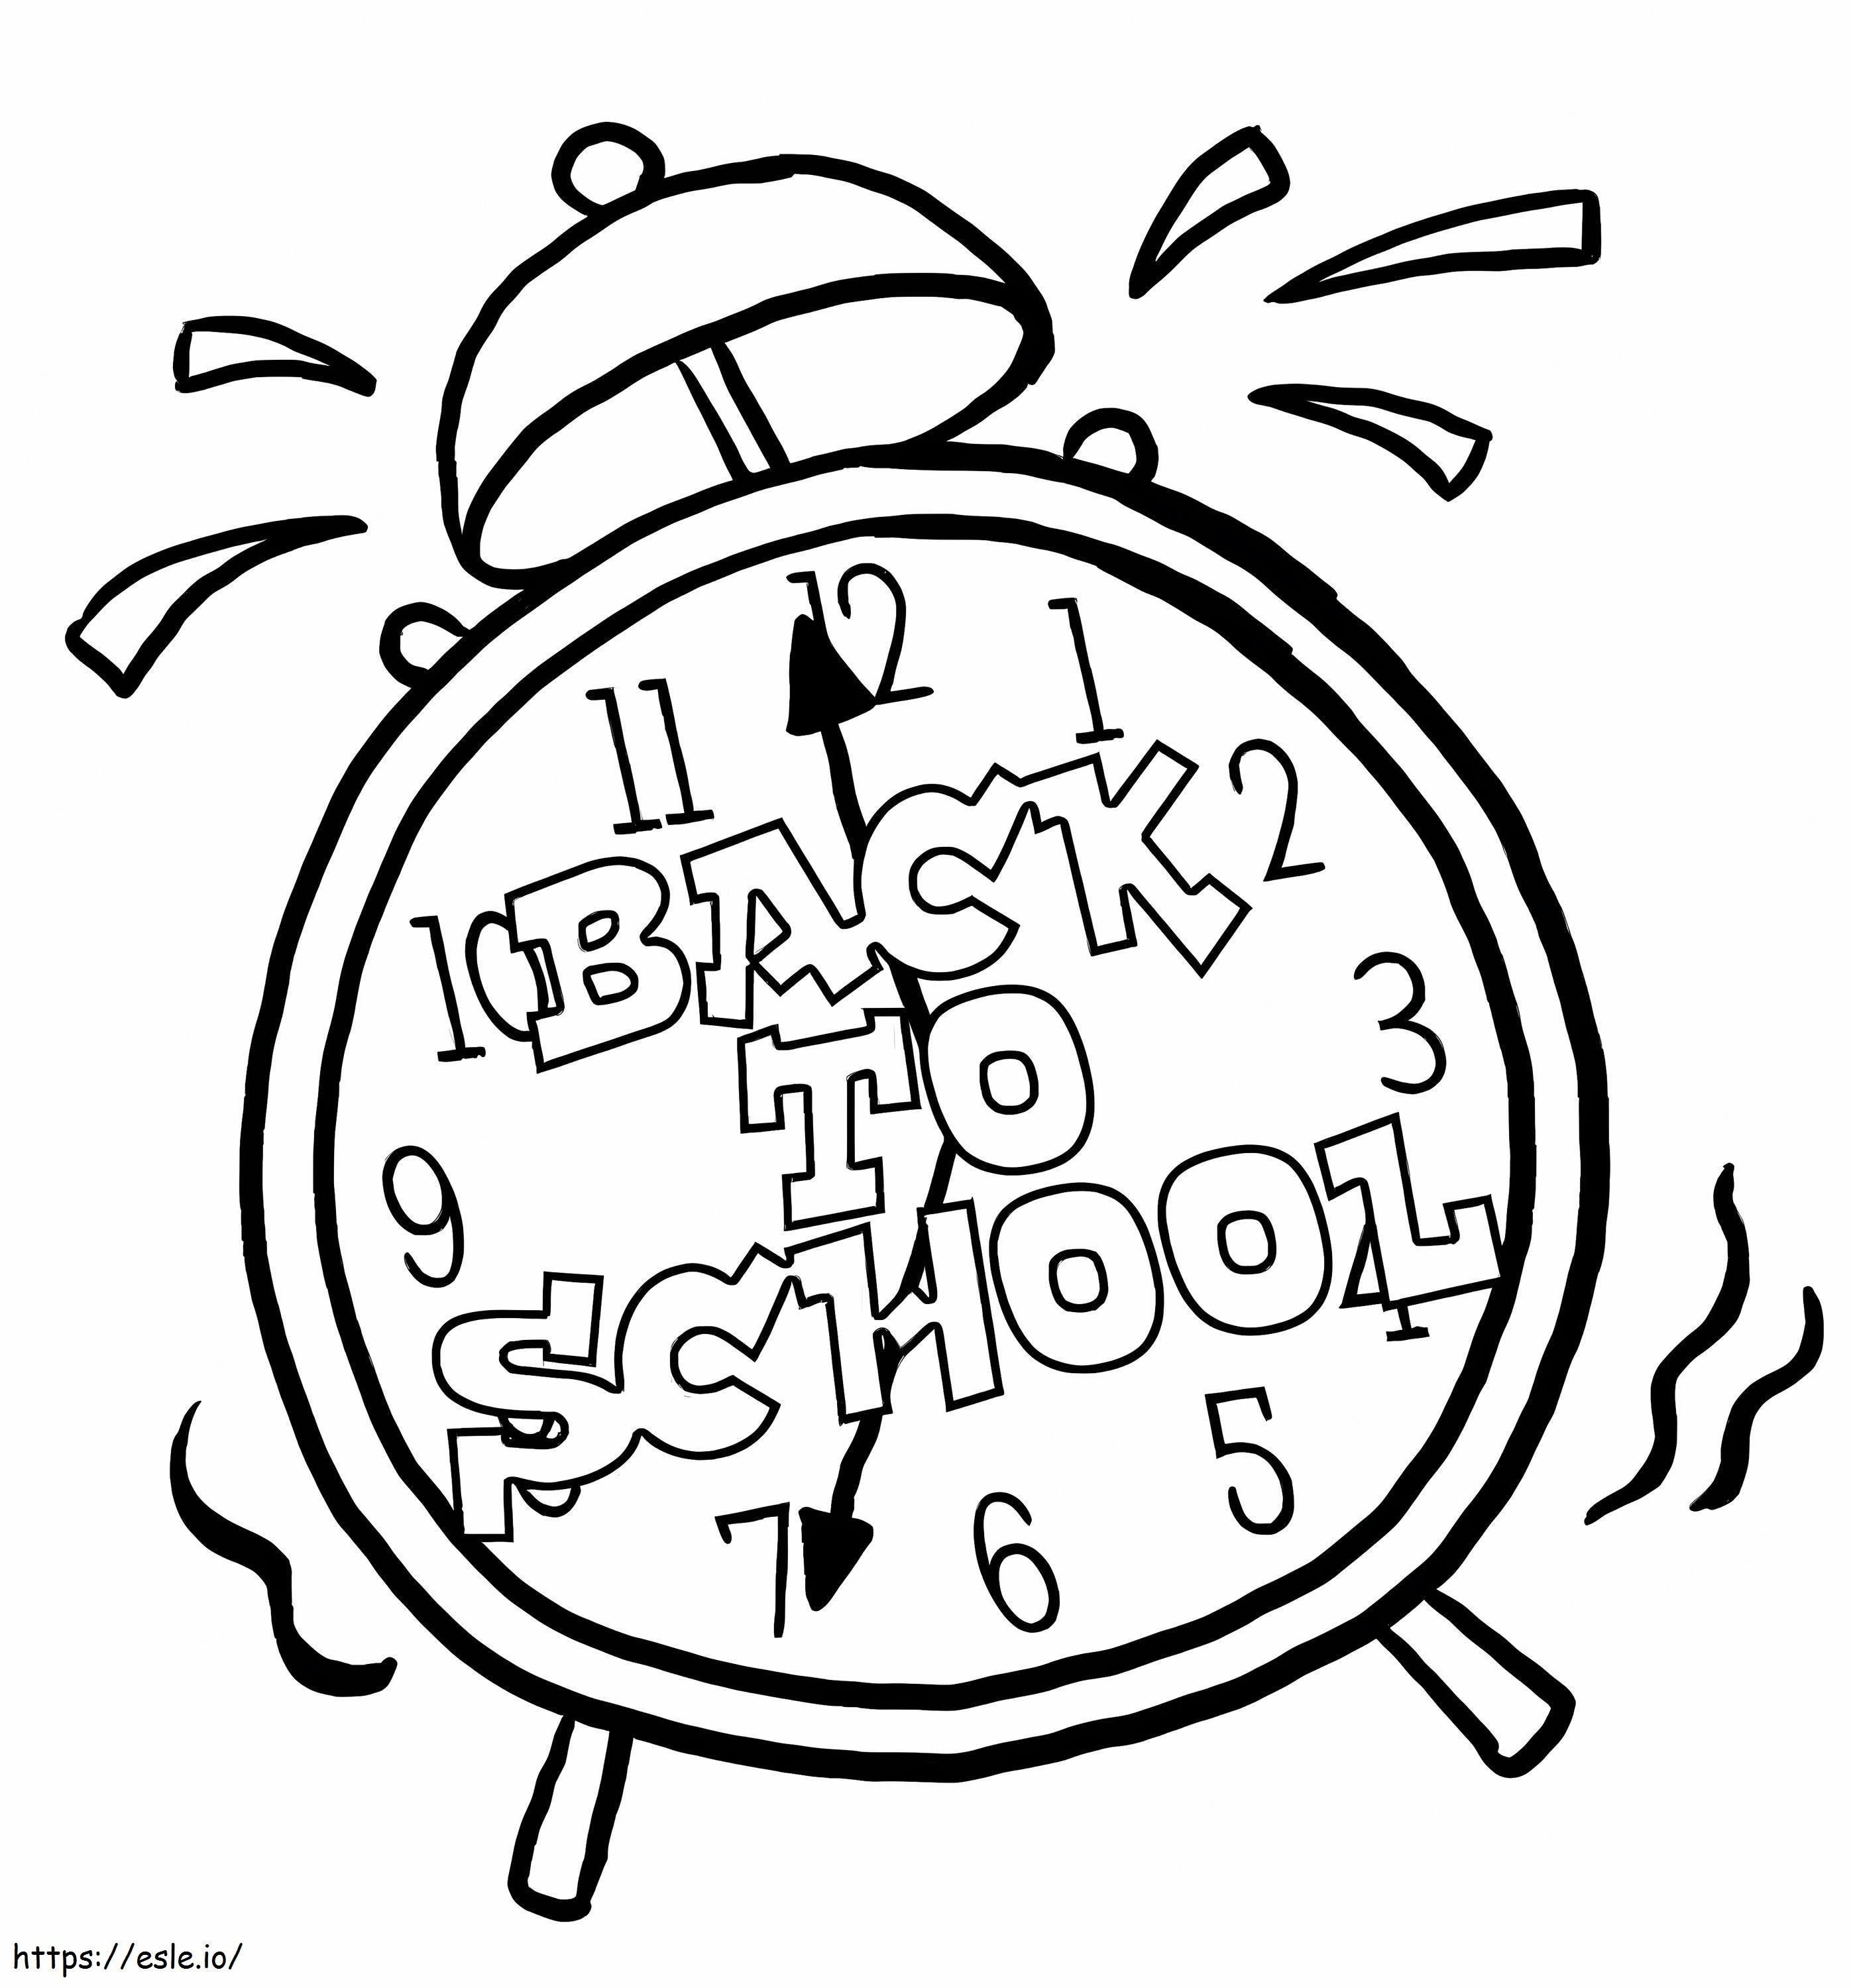 Coloriage Bienvenue à l'horloge de l'école à imprimer dessin